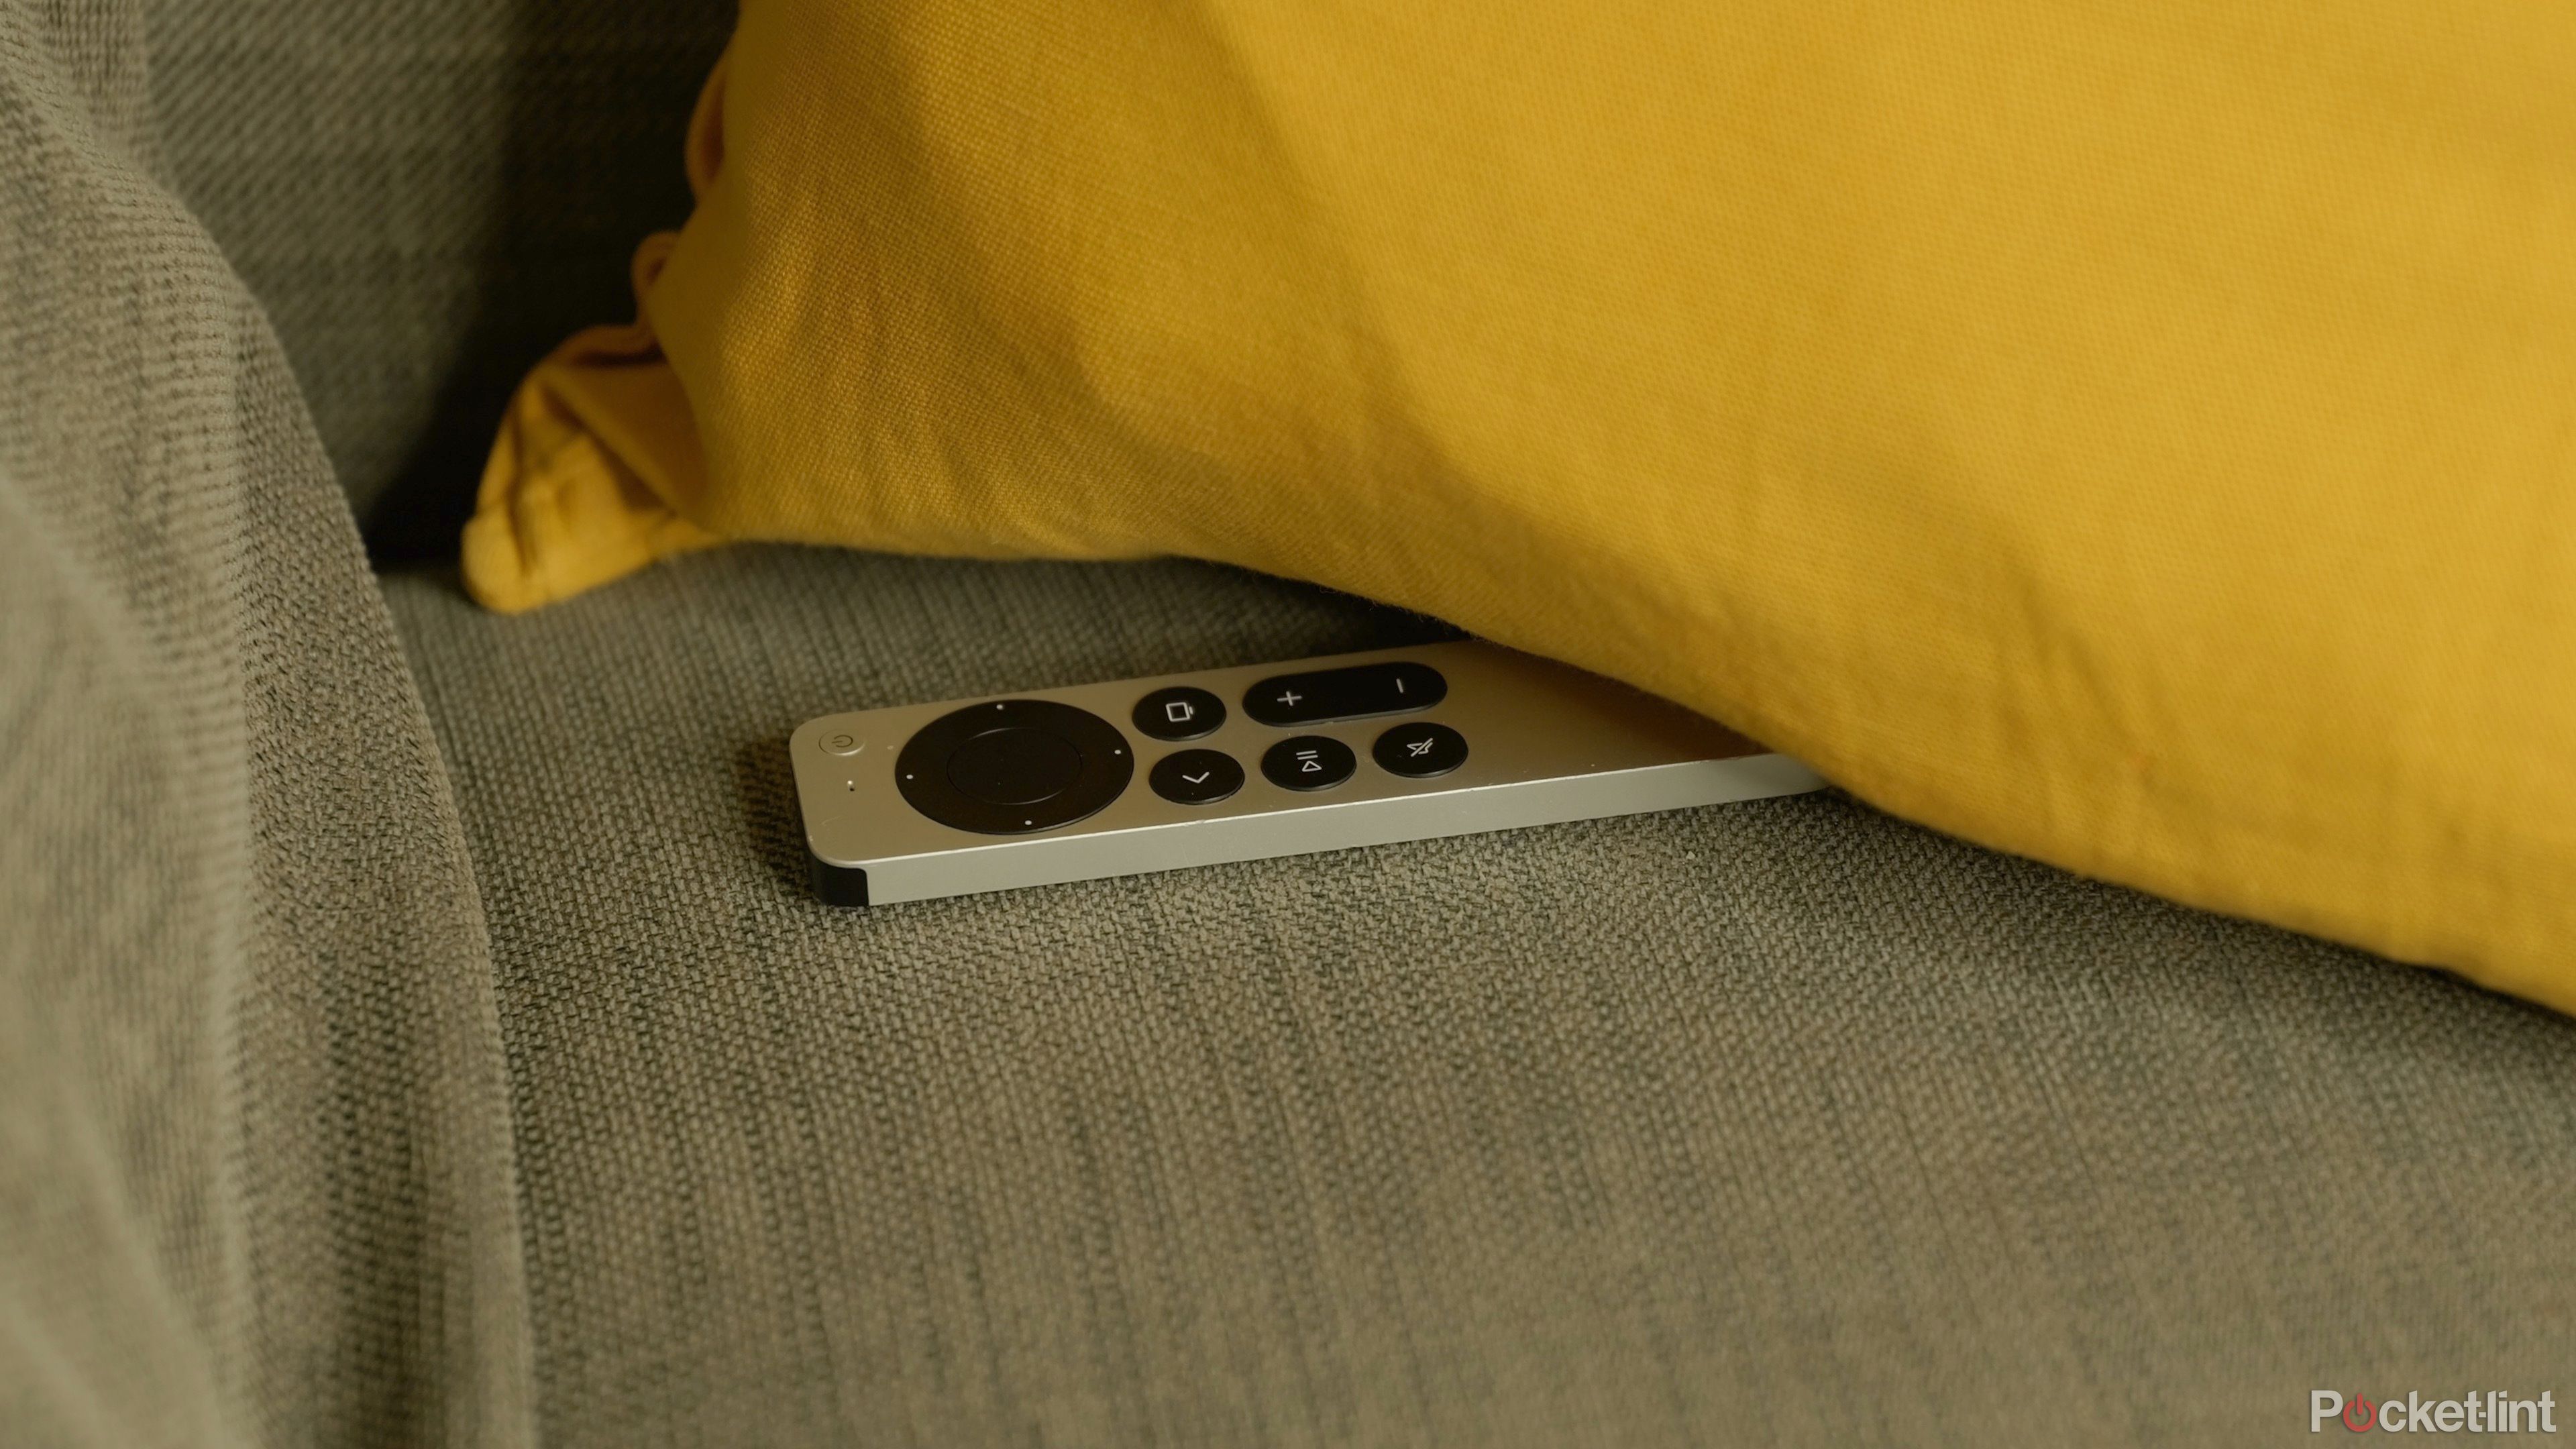 Apple tv remote - lost